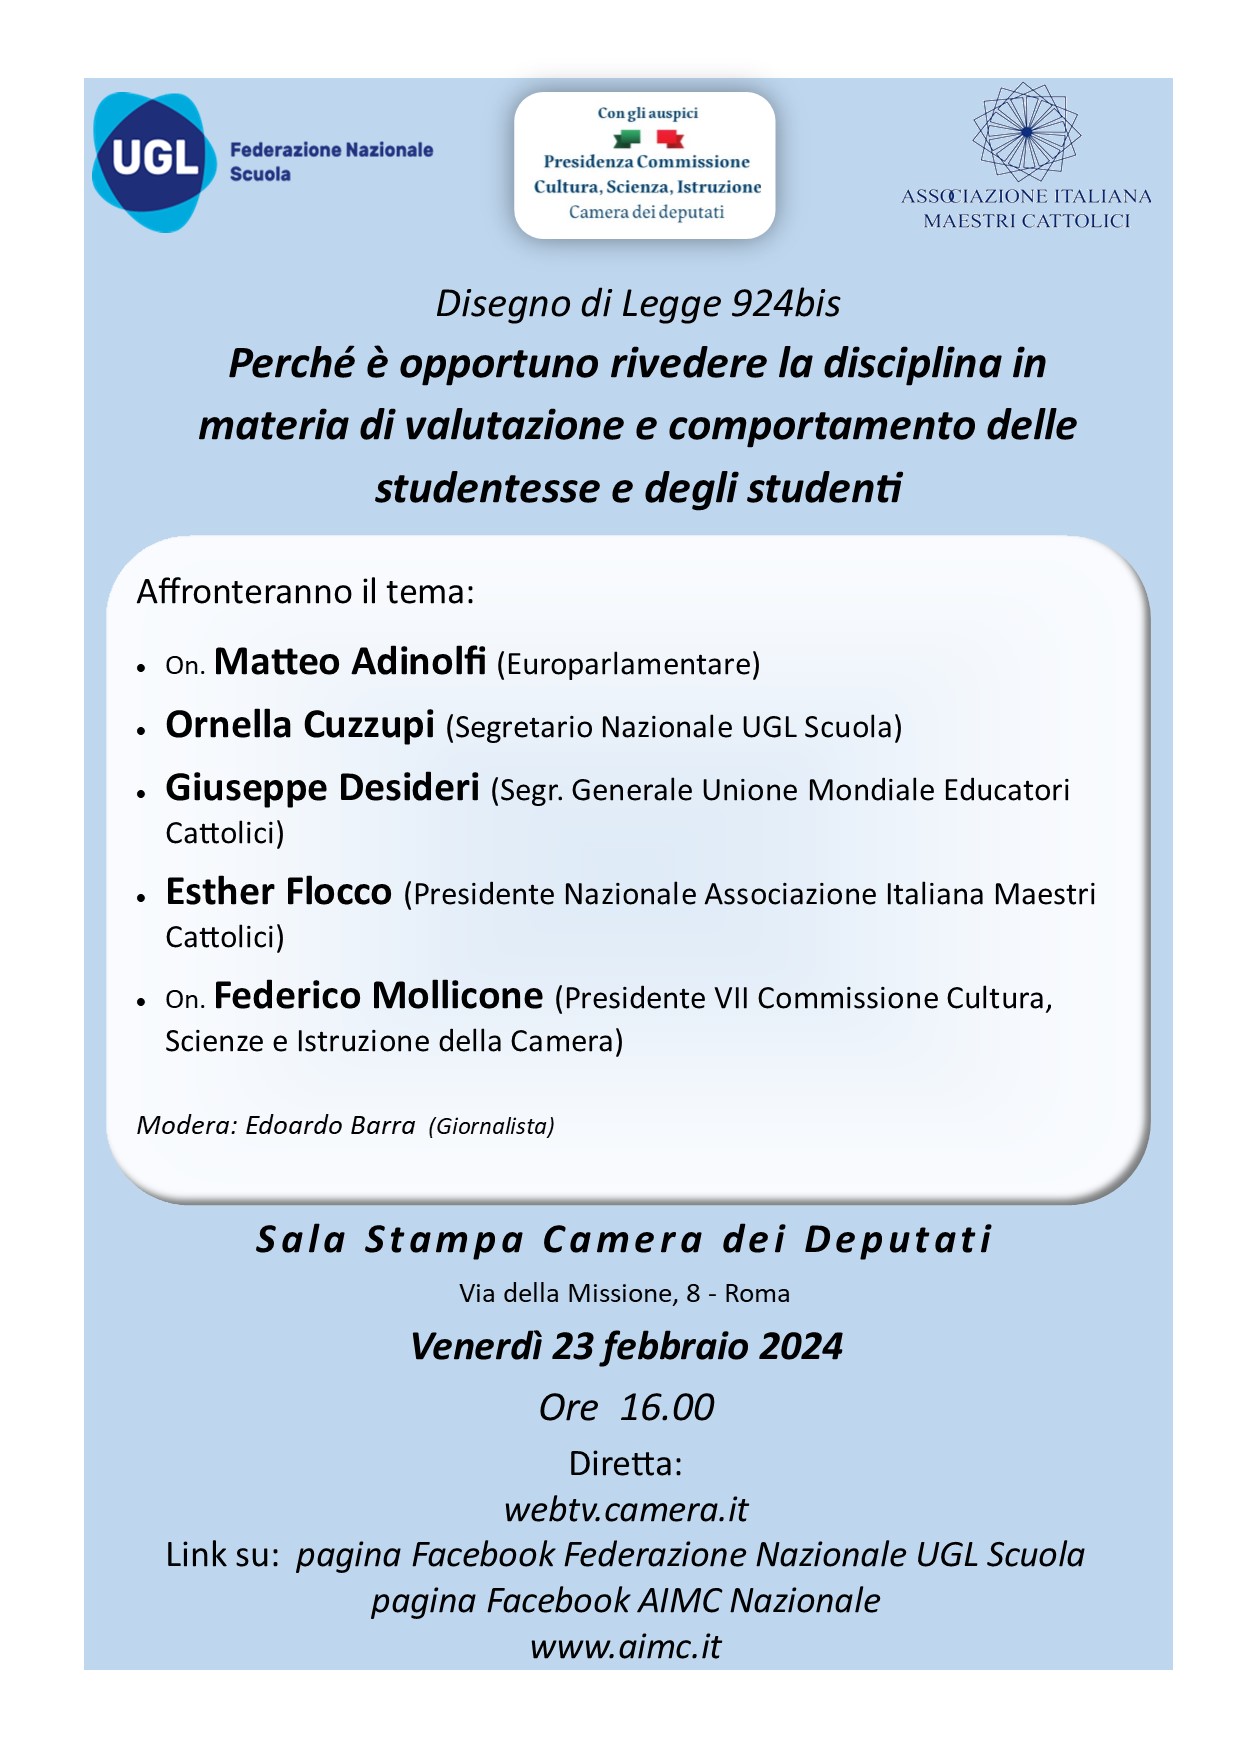 Roma: UGL Scuola, disciplina, conferenza su Disegno di Legge 924bis